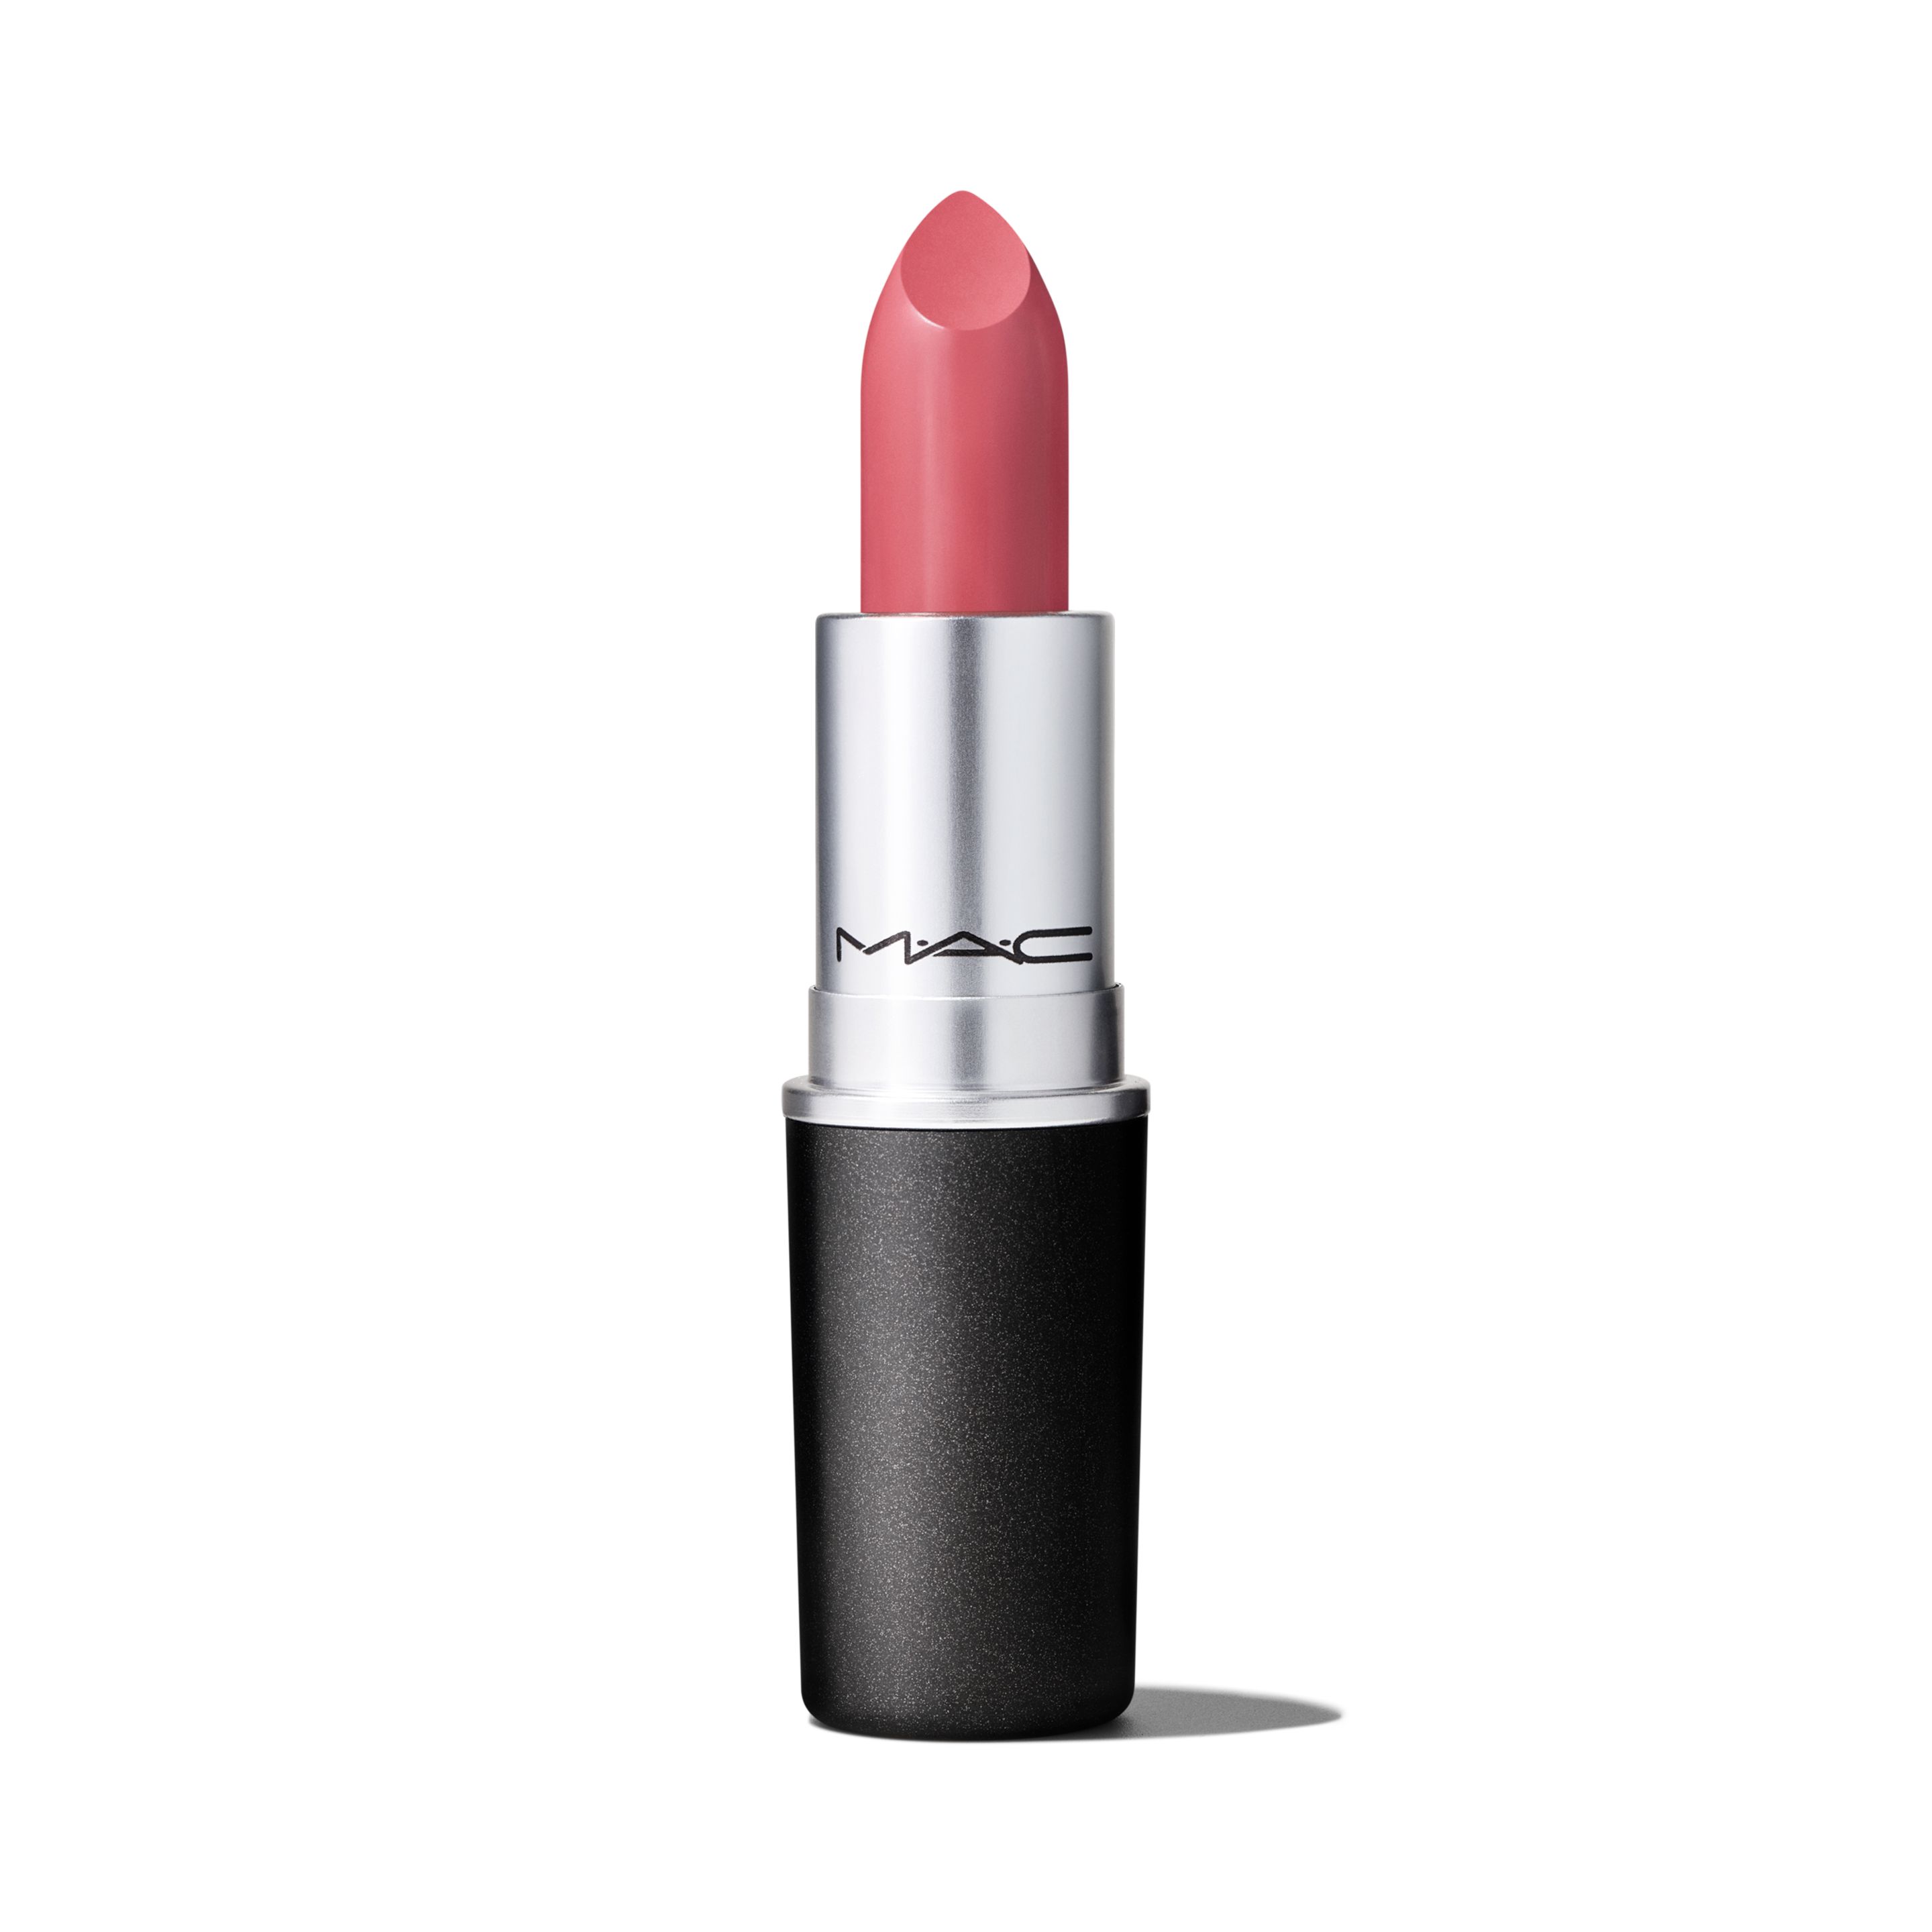 Помада для губ MAC Cosmetics Satin Lipstick кремовая, тон Brave, 3 г помада для губ mac love me lipstick с атласным эффектом тон french silk 3 г